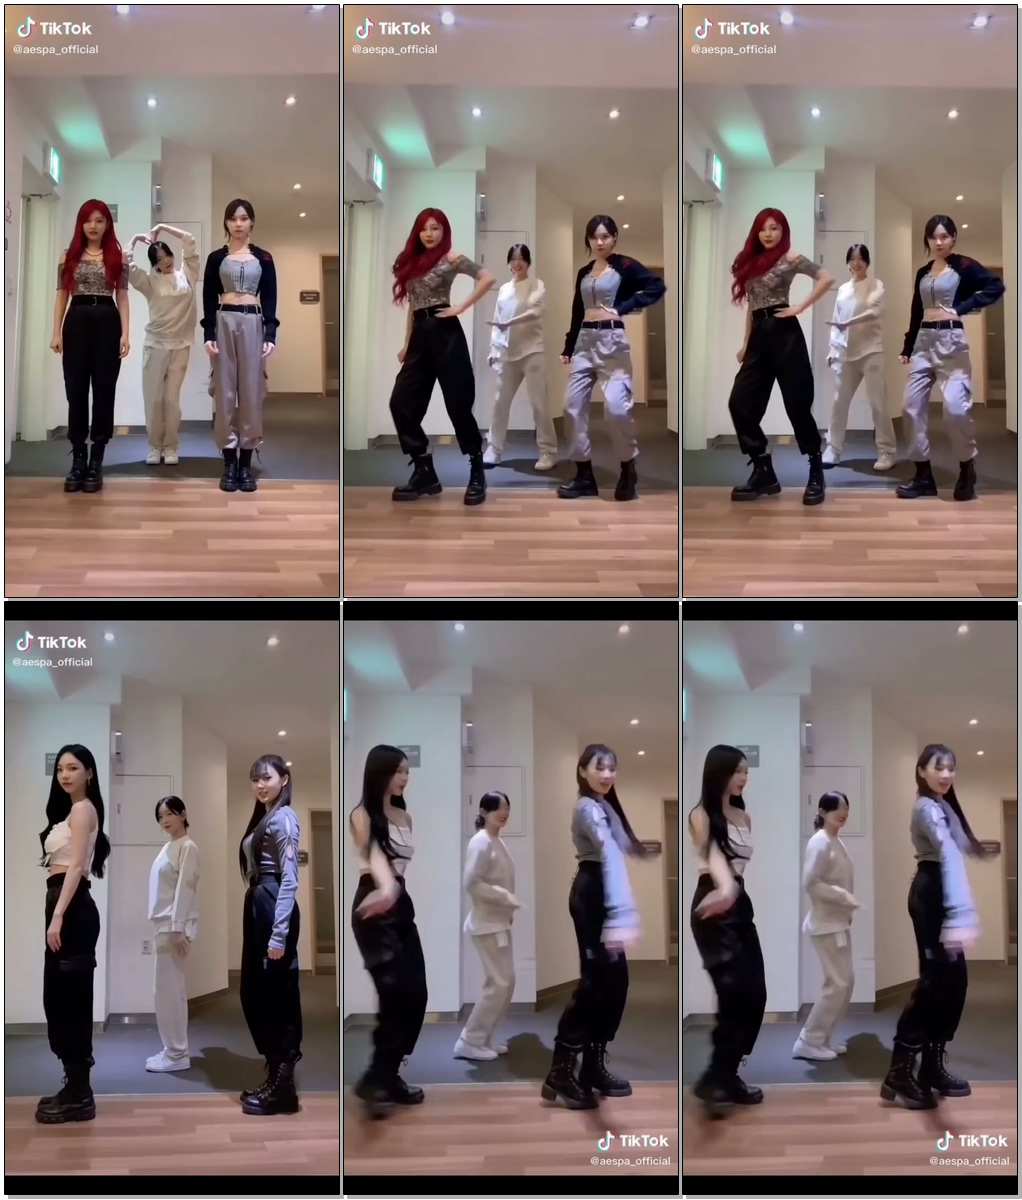 #aespa #NextLevel #WooWee_Dance aespa 'Next Level' Tiktok Challenge with Taeyeon